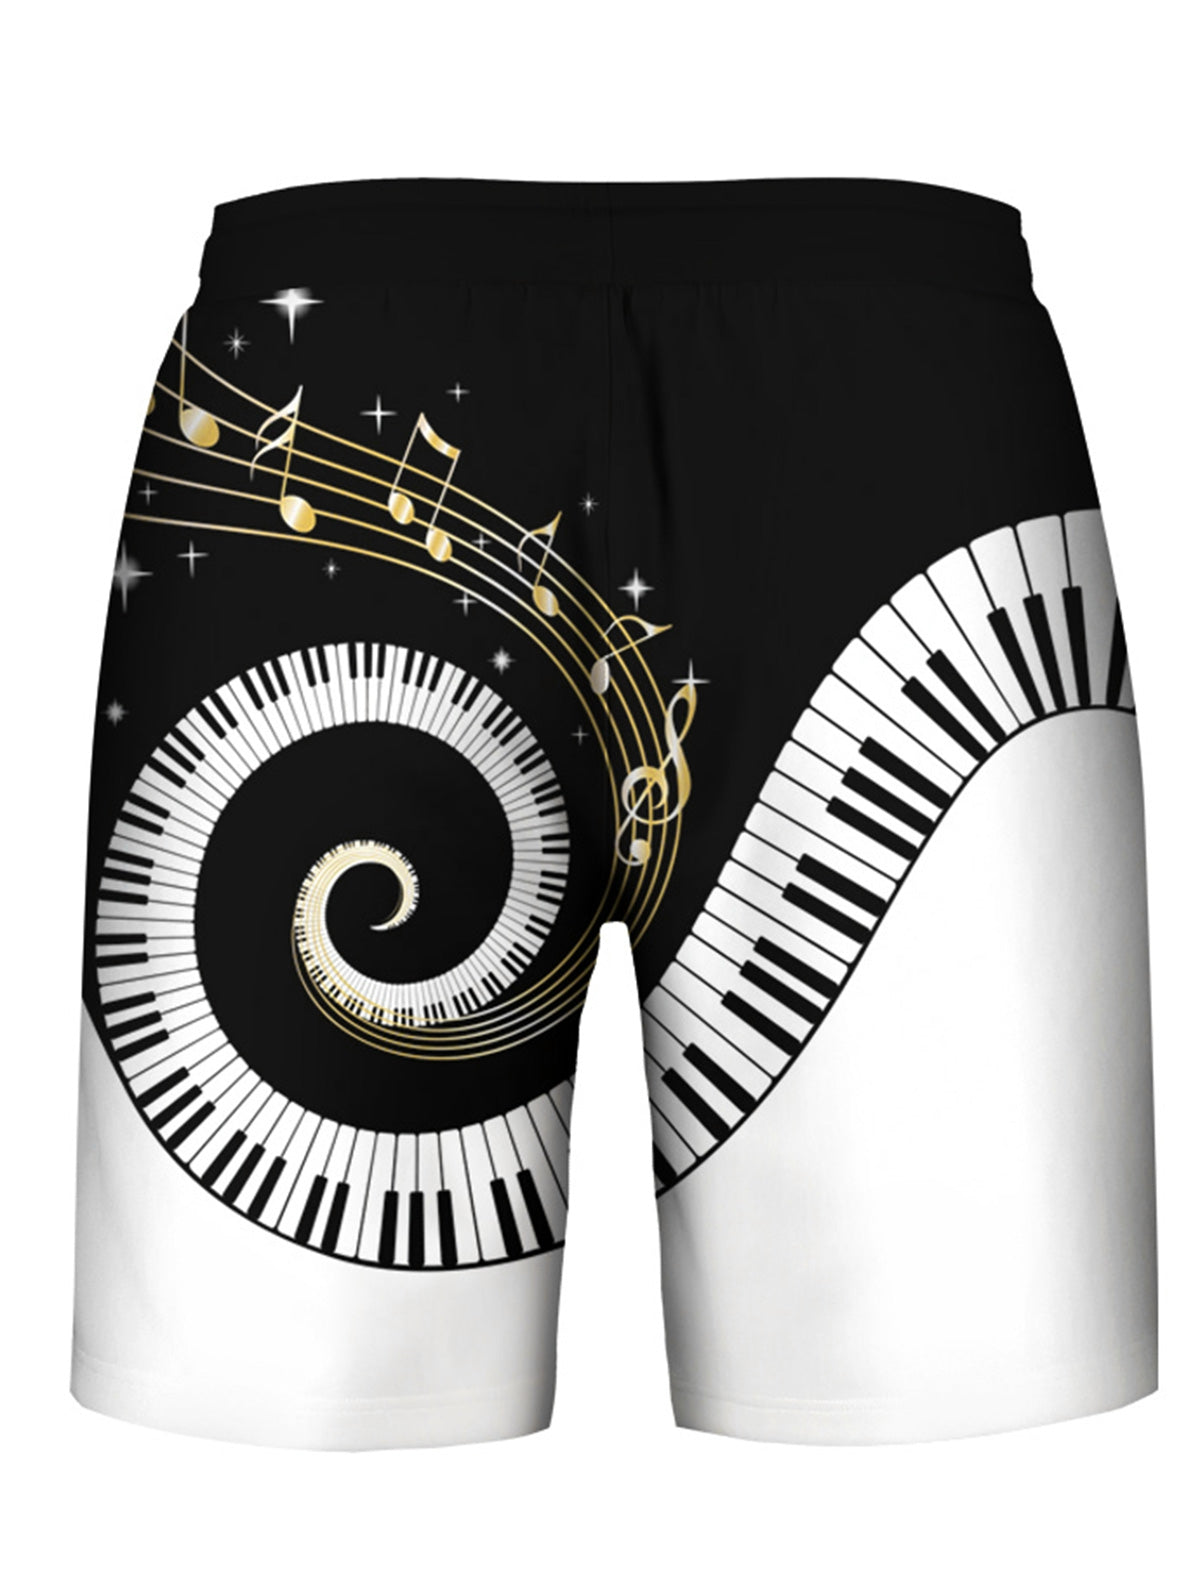 Piano Key Printed Sleeveless Hoodies Tank Top and Shorts